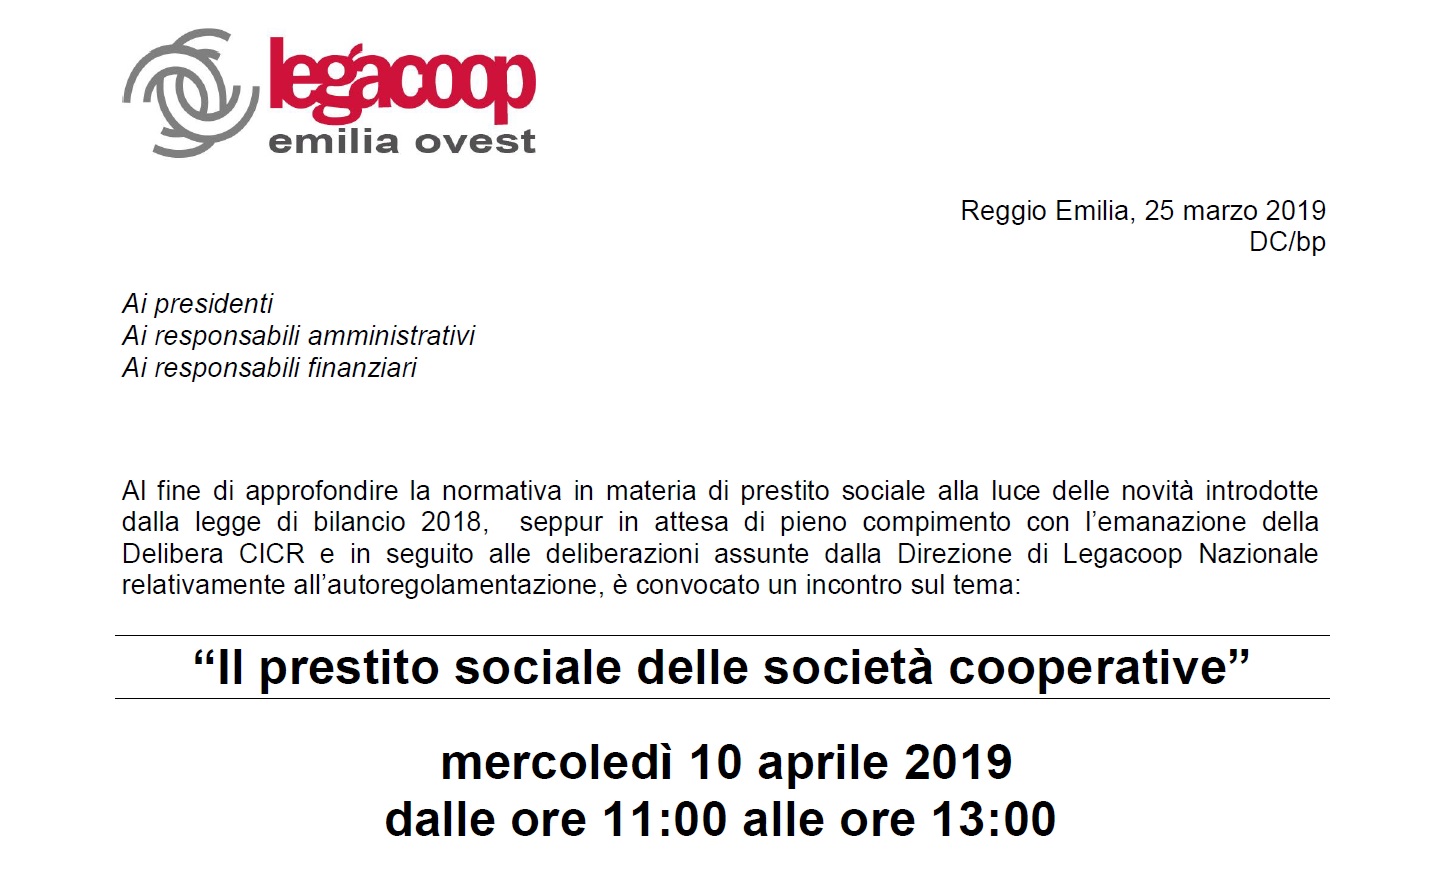 Al momento stai visualizzando Il prestito sociale delle società cooperative, un incontro il 10 aprile